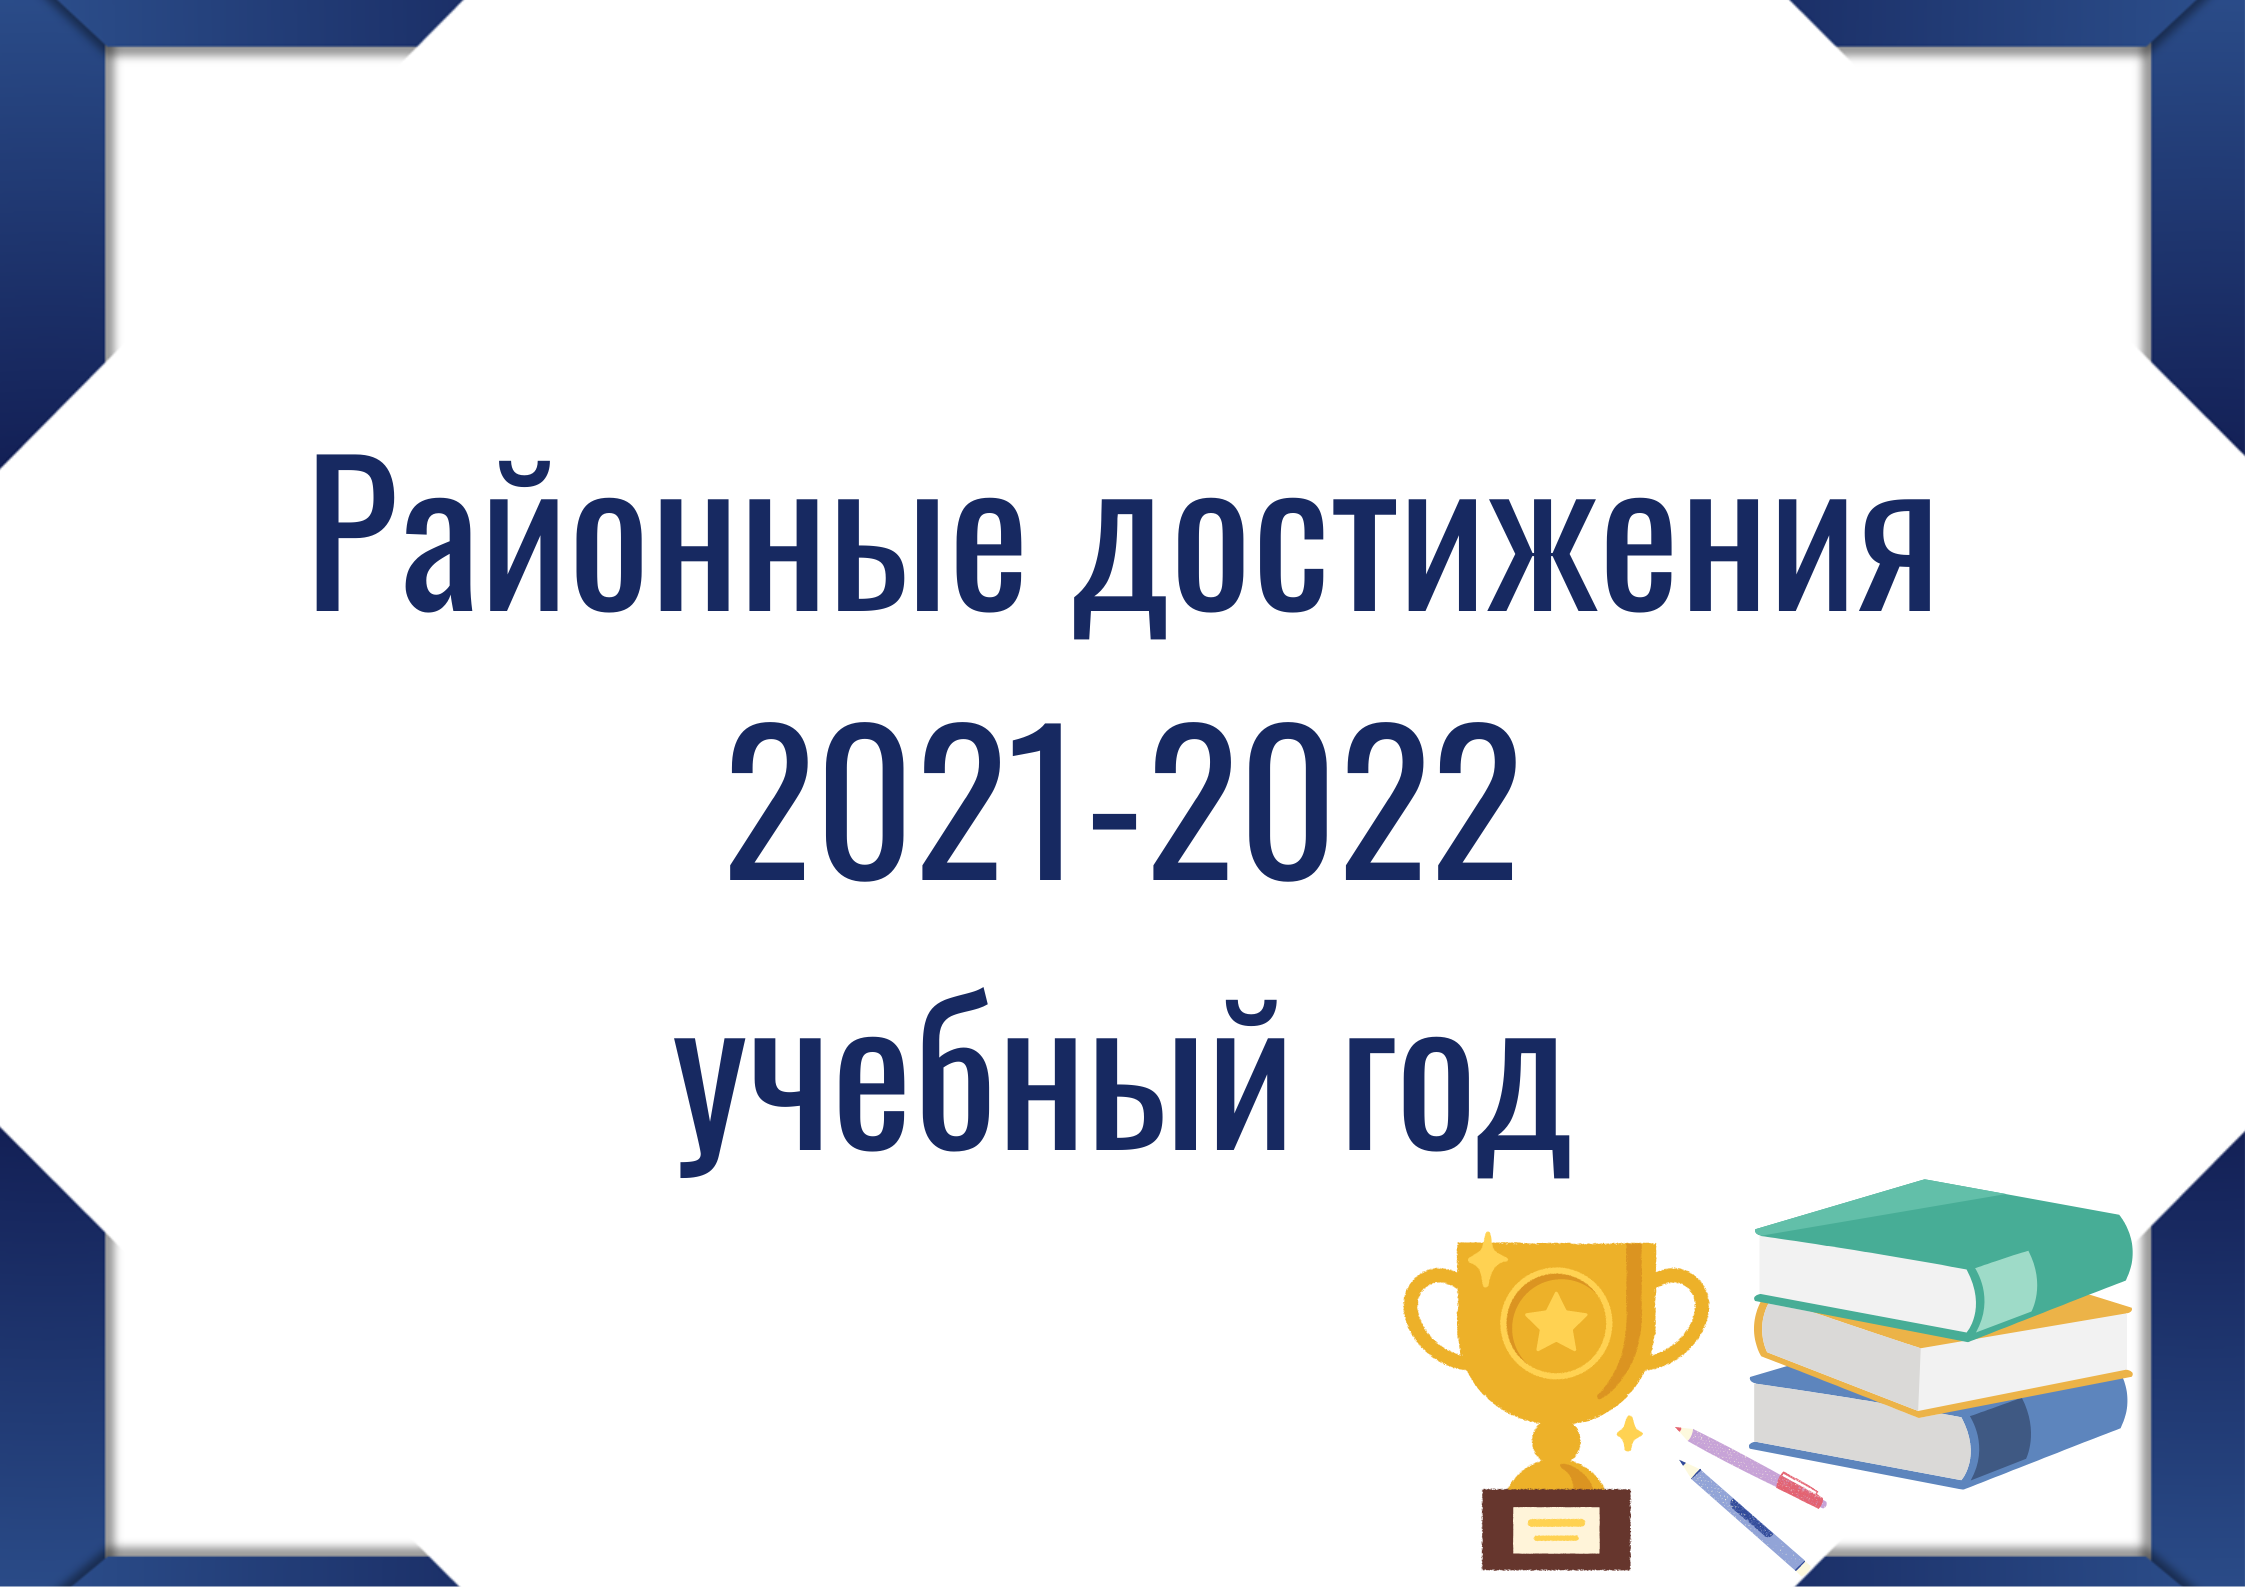 Кнопка "Районные достижения 2021-2022"